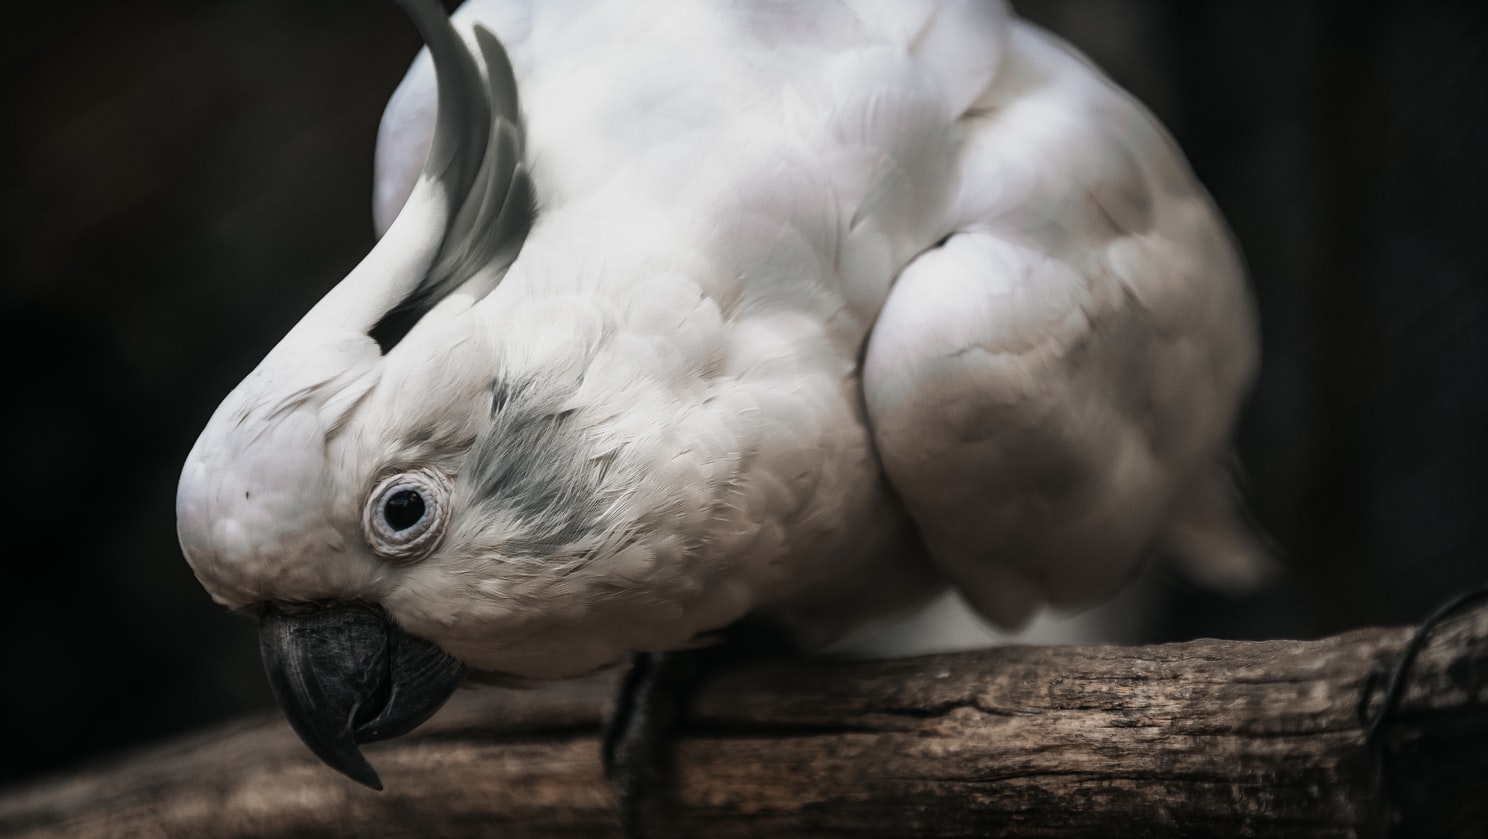 Παπαγάλοι που βρίζουν: Πέντε πουλιά έφεραν αναστάτωση στη Βρετανία